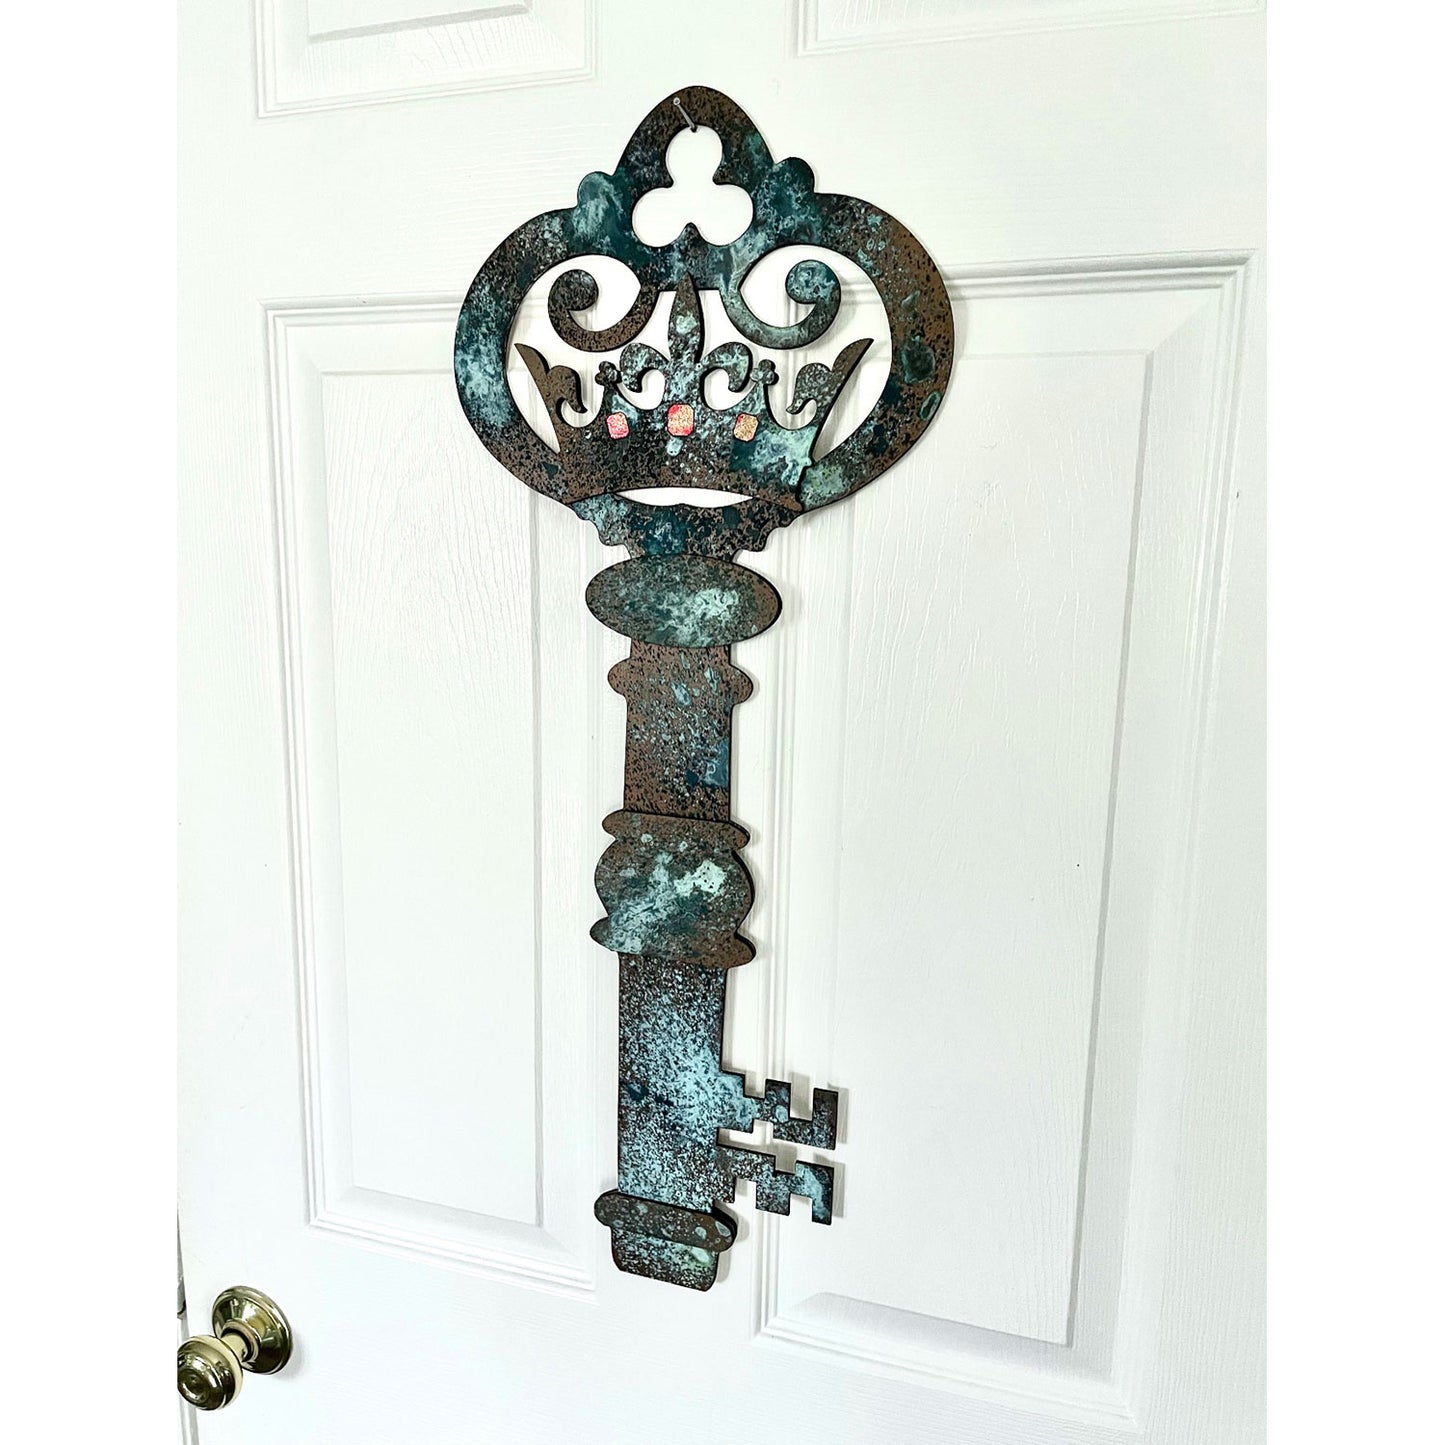 Personalizable Antique Key Door Hanger - Rustic Key Door Decoration